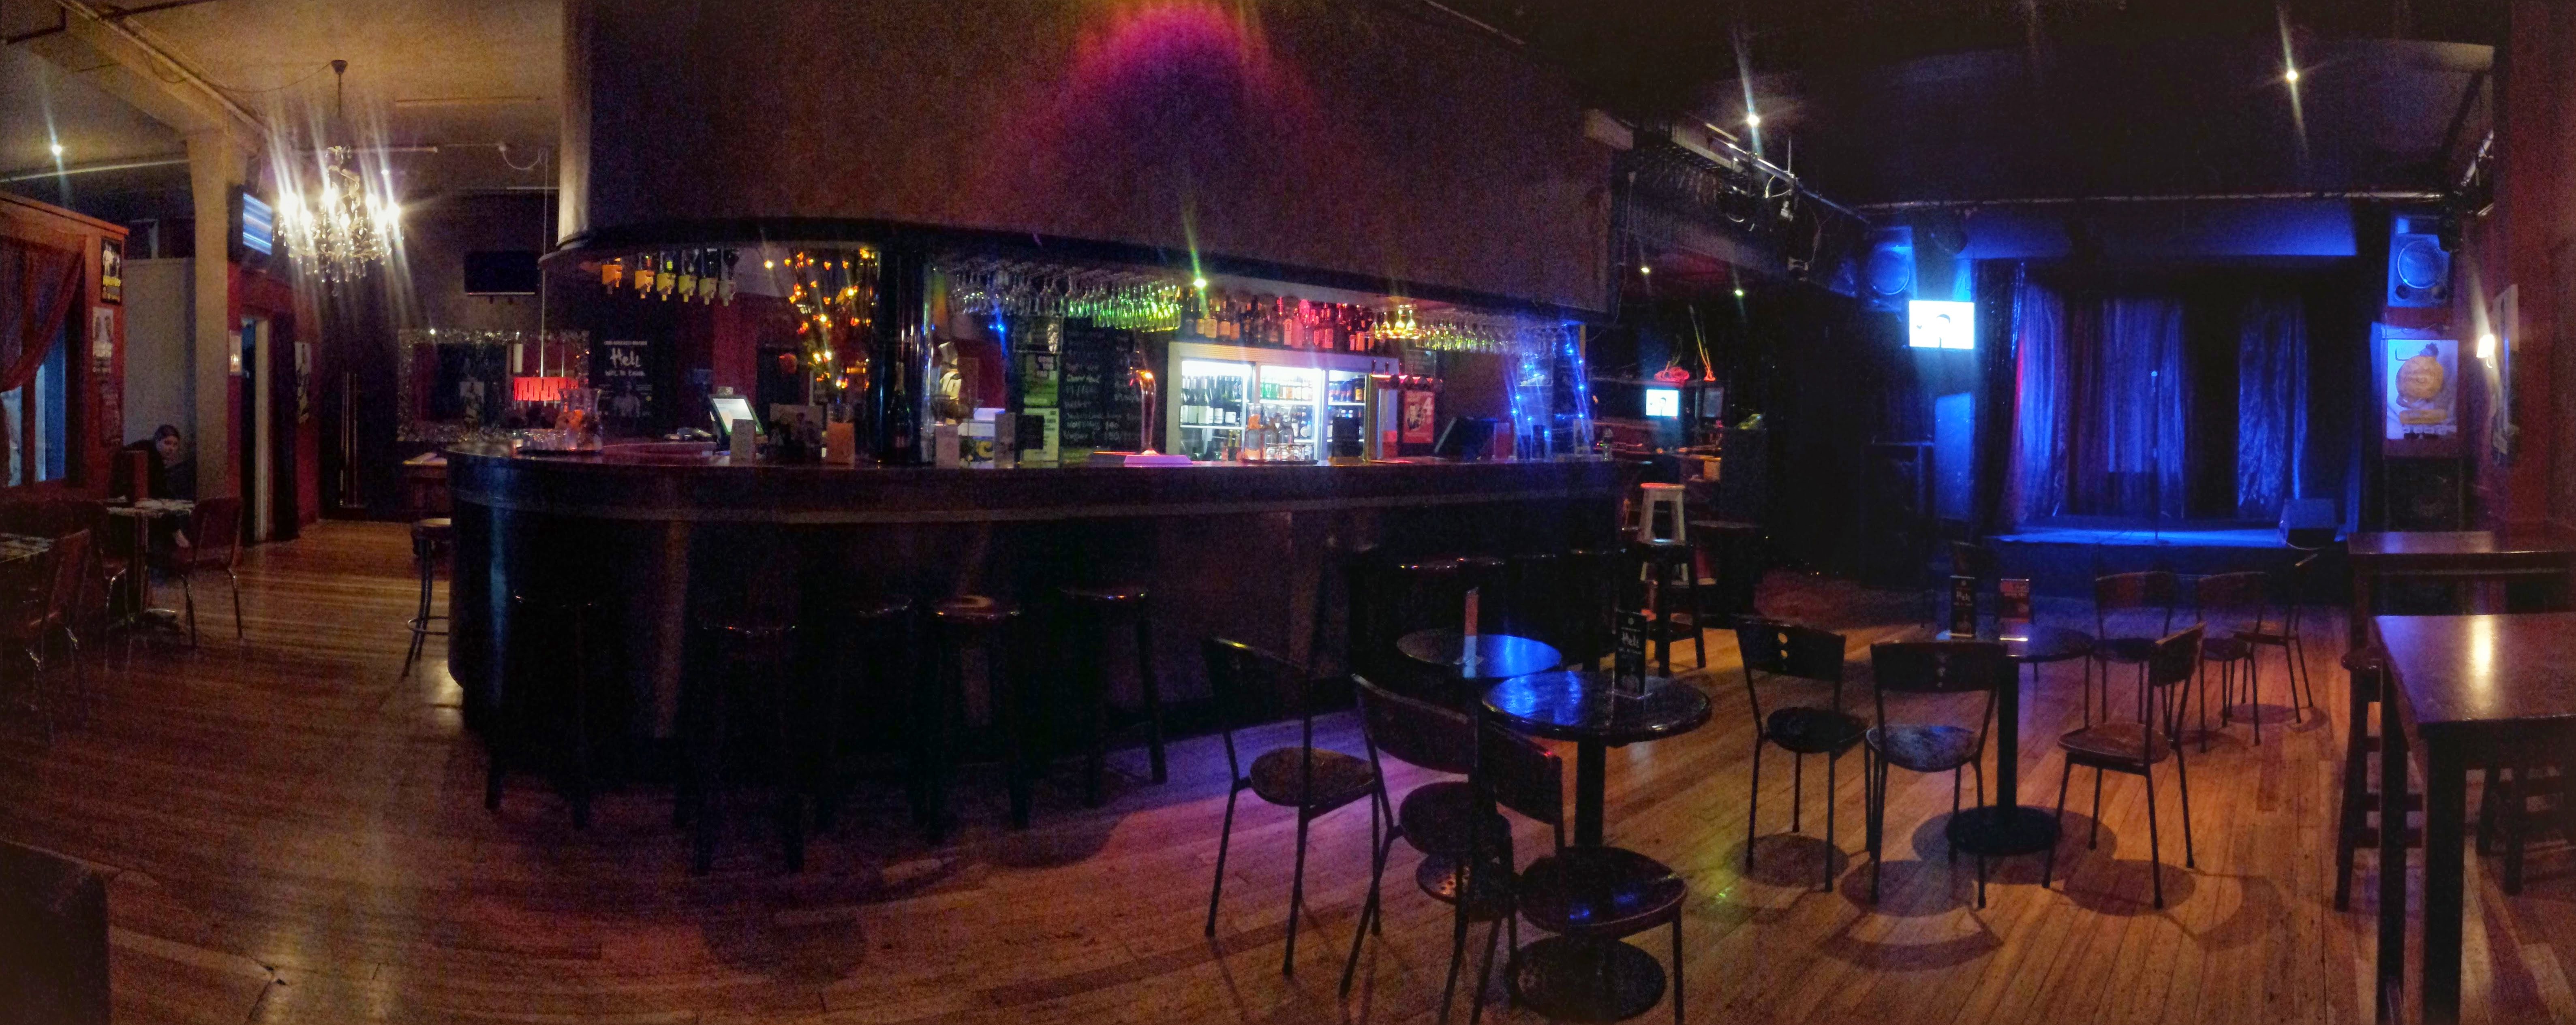 The Fringe Bar